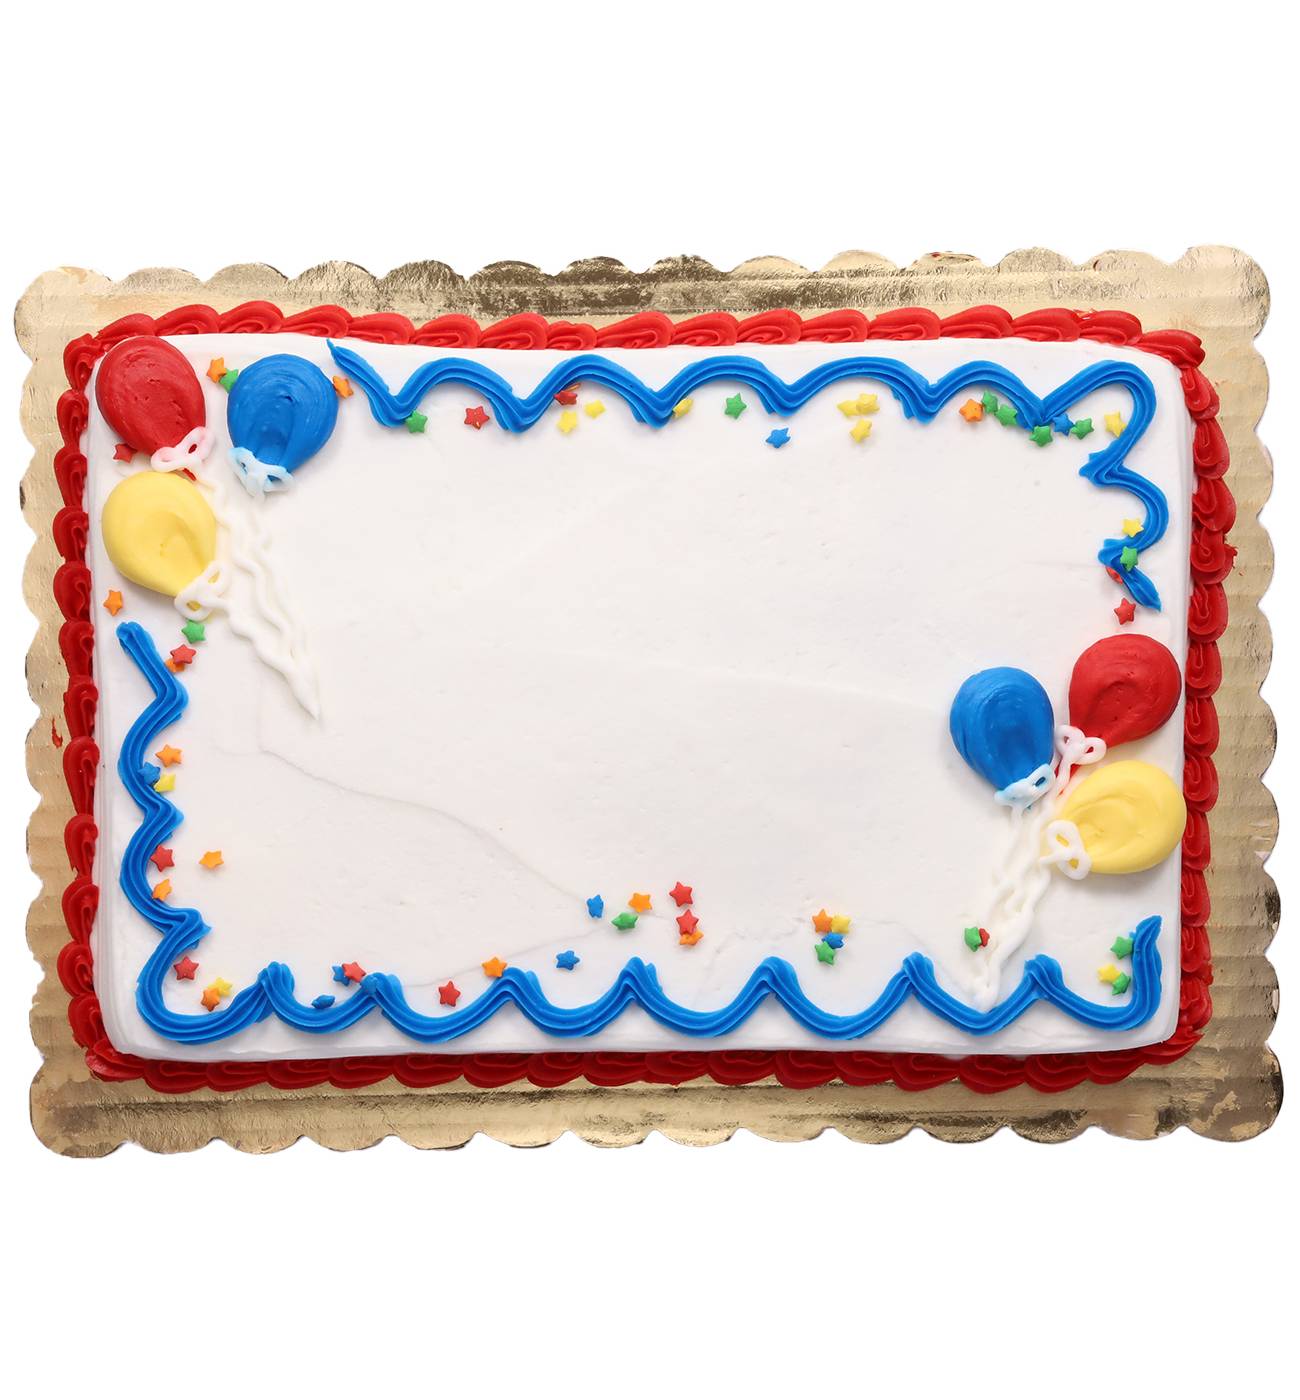 Baker Maid Balloon Celebration Buttercream White Cake; image 2 of 3